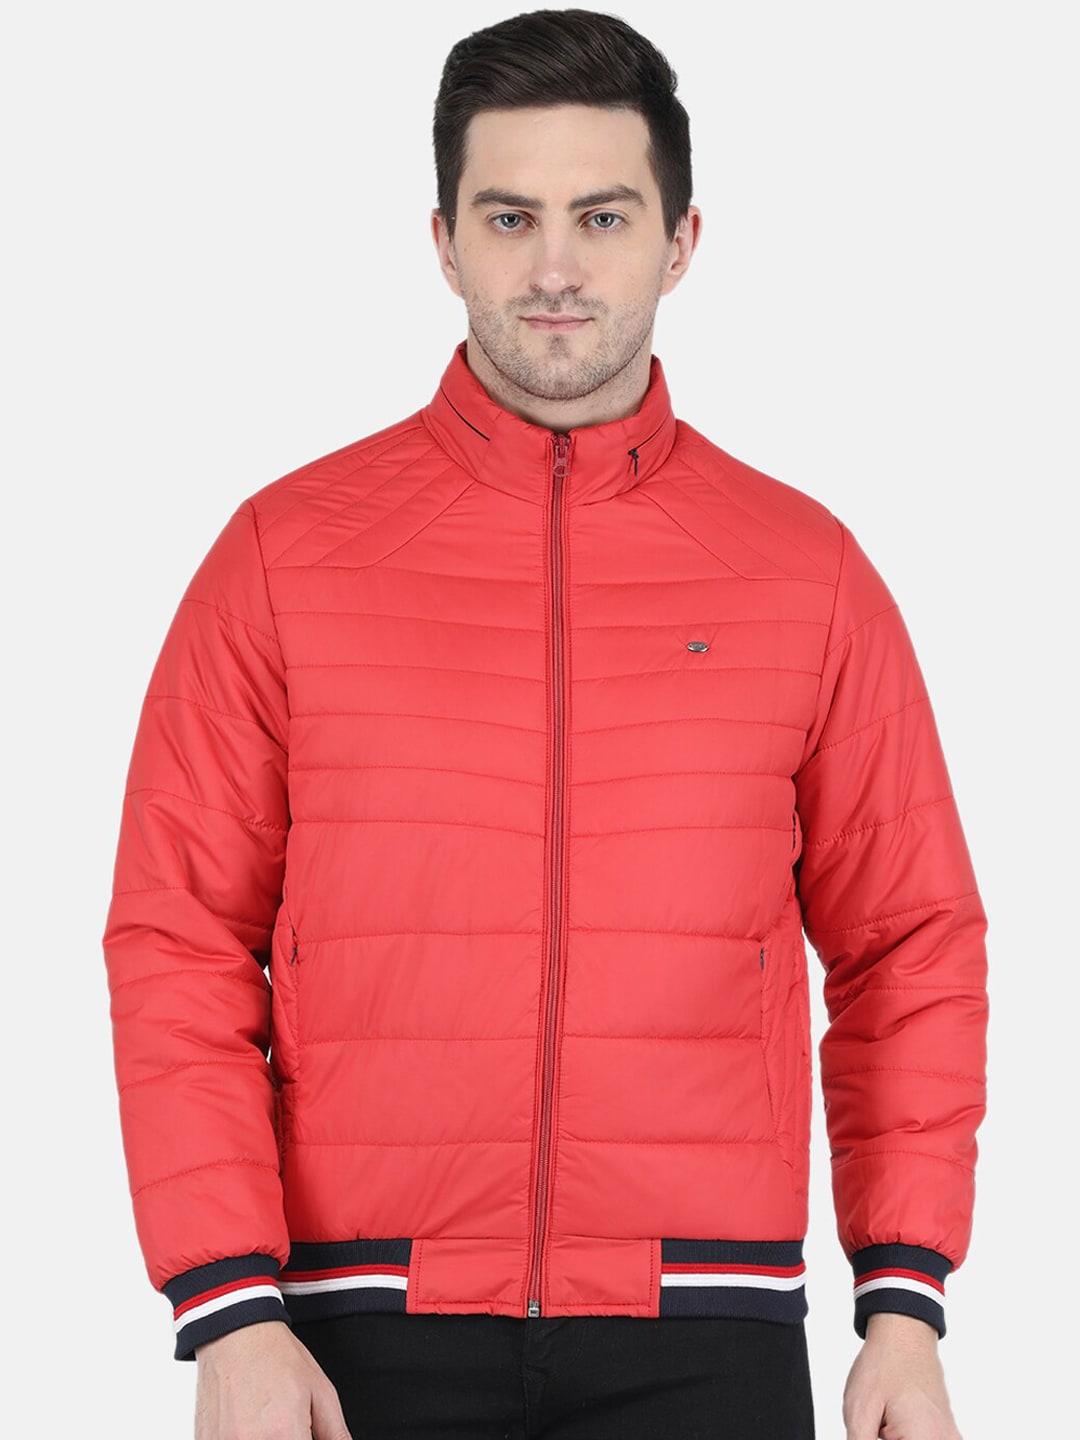 monte carlo men coral orange solid long sleeves padded jacket